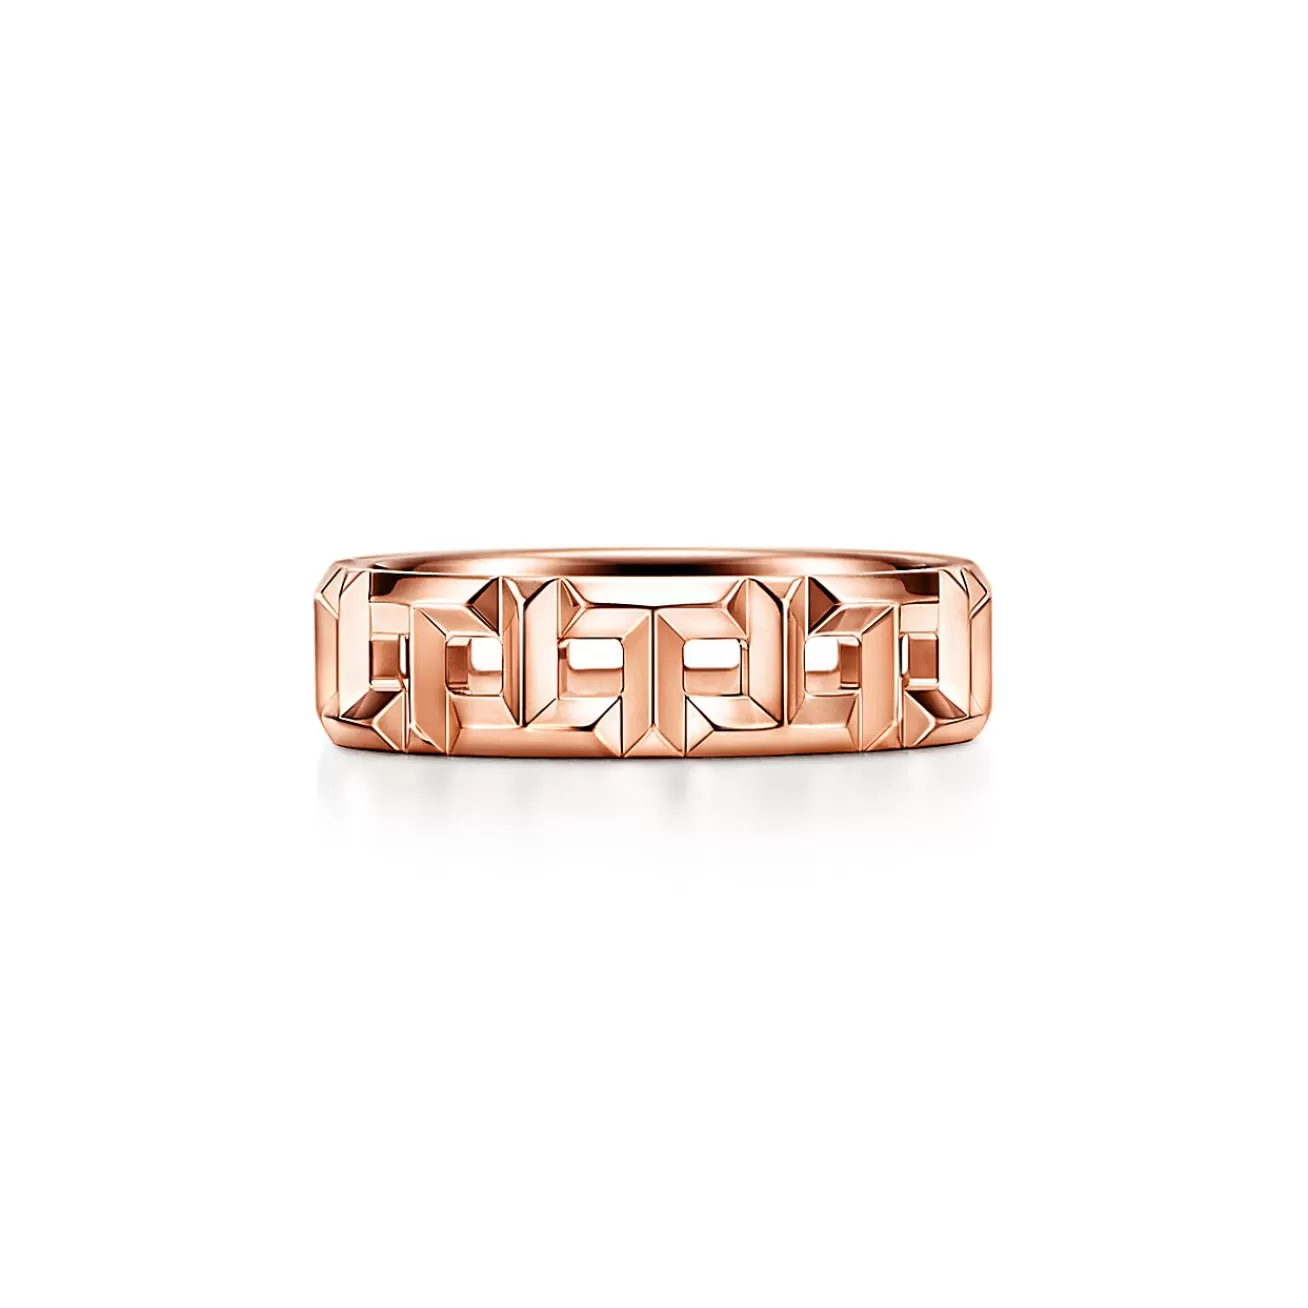 Tiffany & Co. Tiffany T True wide ring in 18k rose gold, 5.5 mm wide. | ^Women Rings | Men's Jewelry